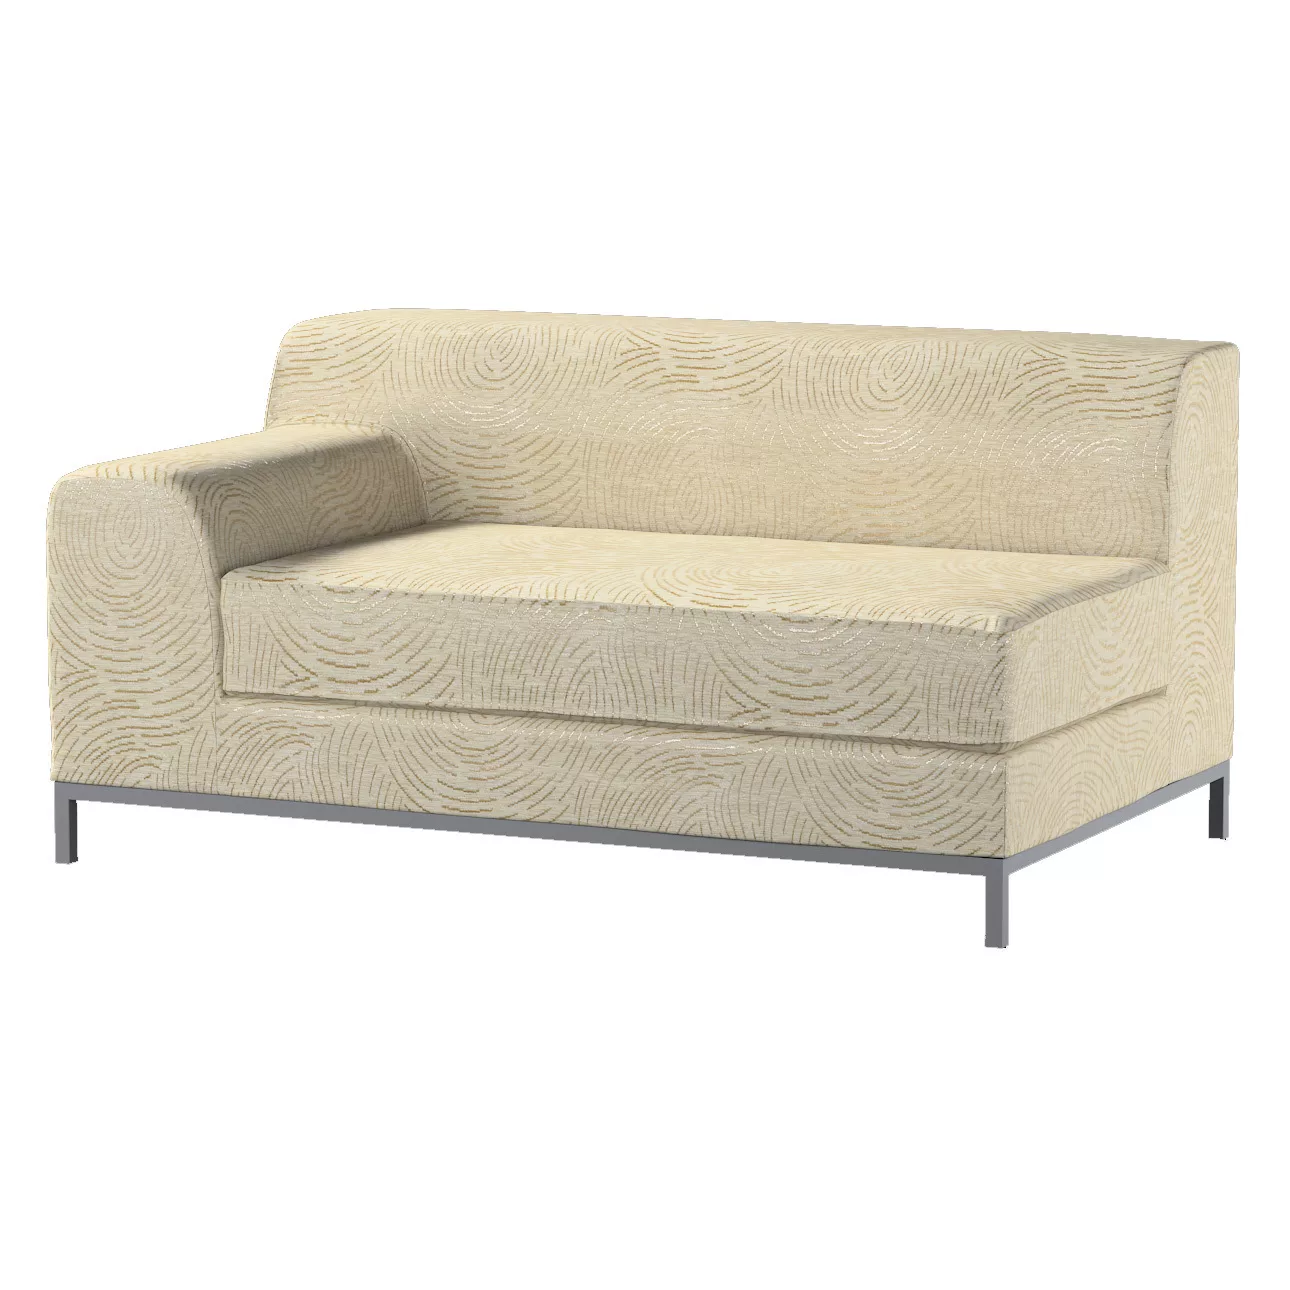 Bezug für Kramfors 2-Sitzer Sofa, Lehne links, beige-golden, Bezug für Kram günstig online kaufen